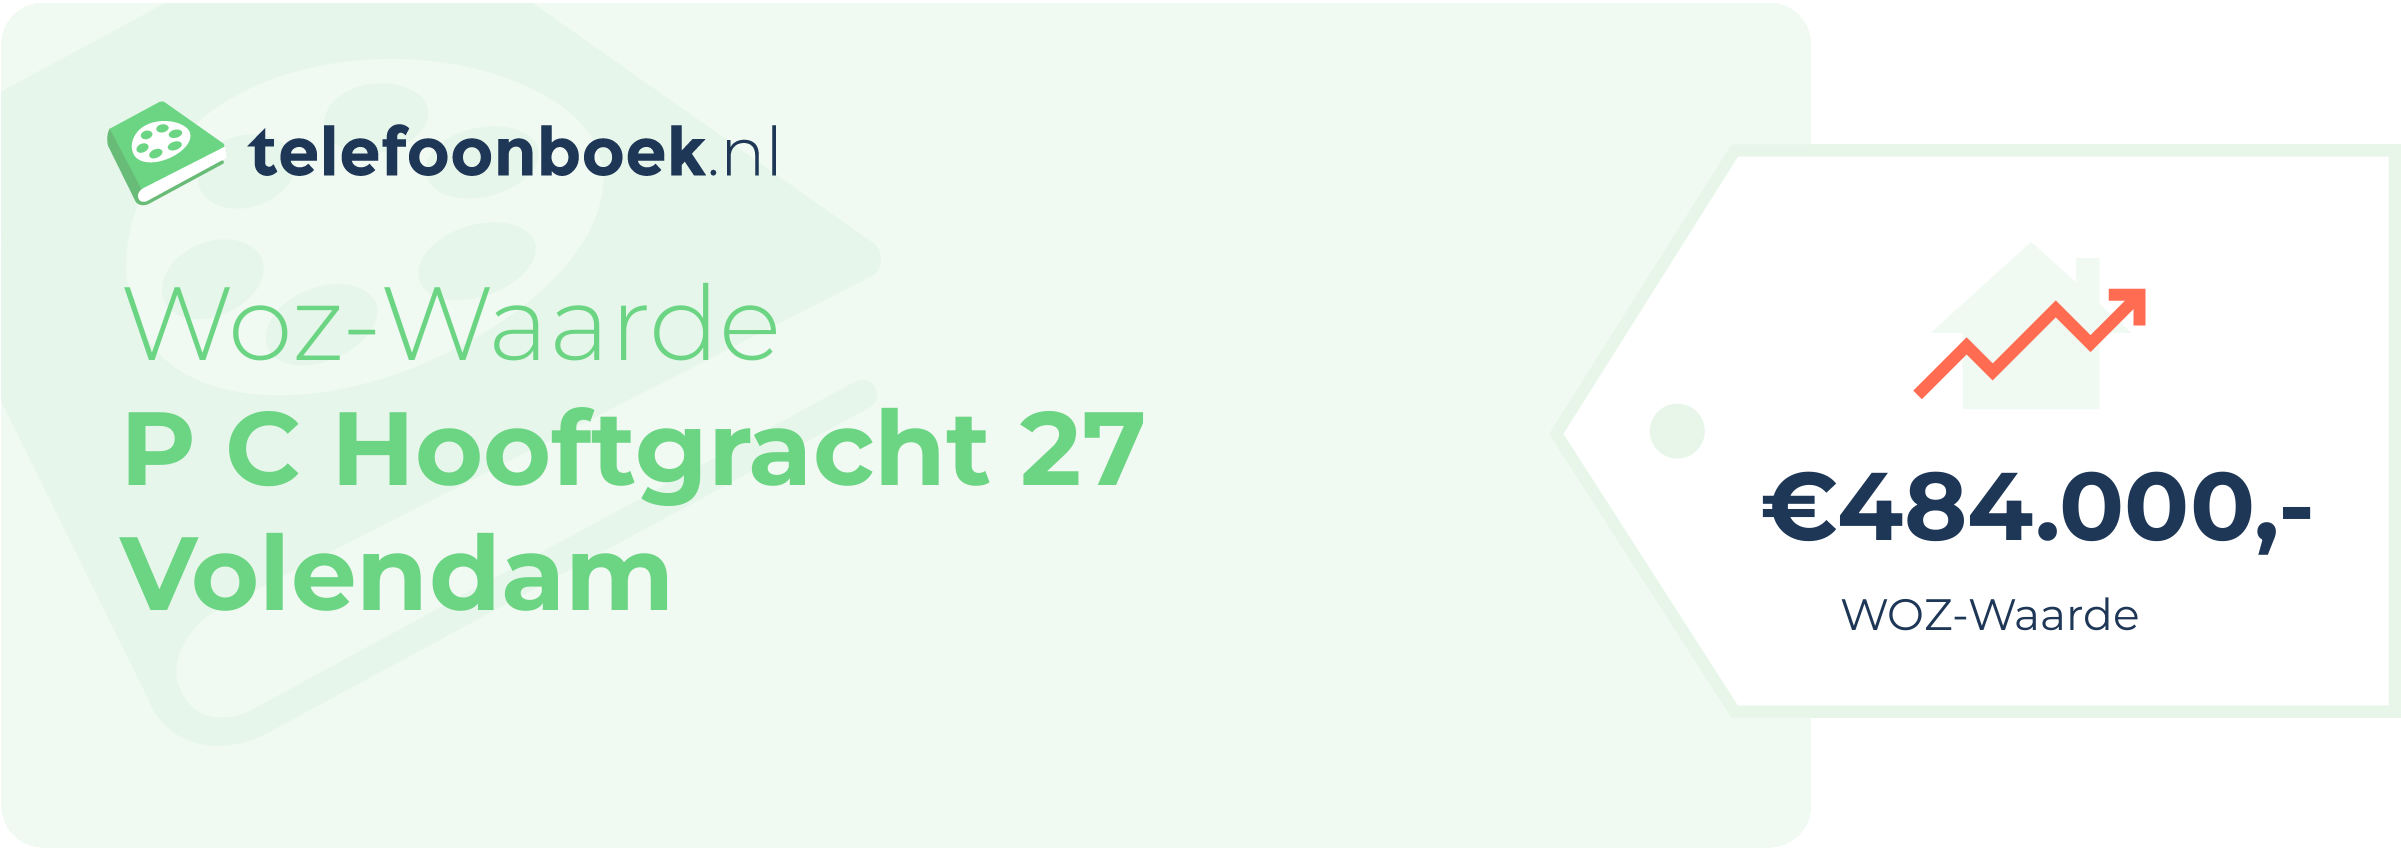 WOZ-waarde P C Hooftgracht 27 Volendam